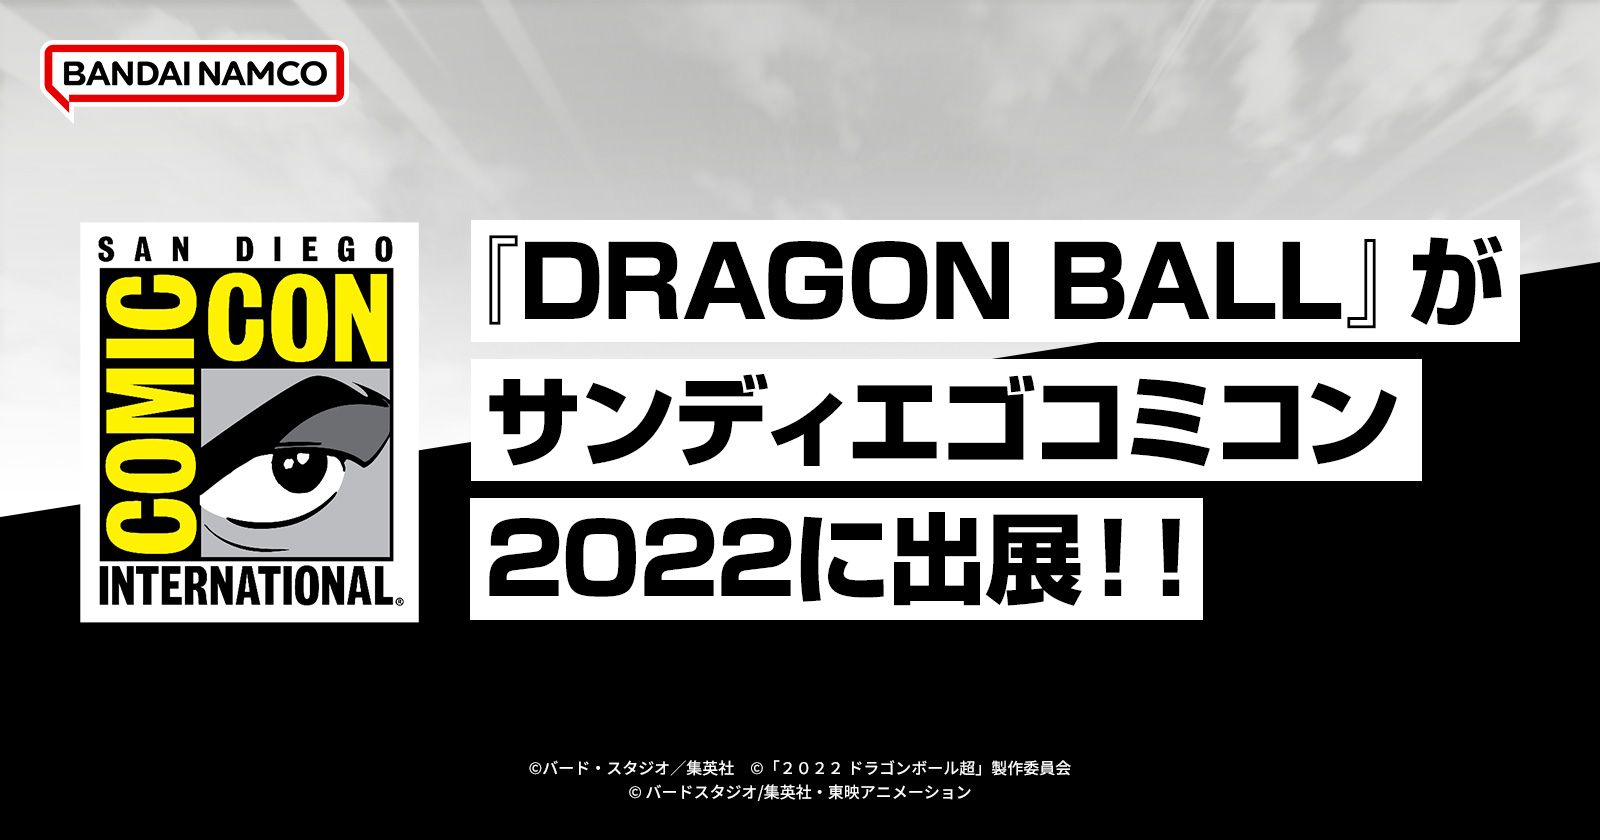 『DRAGON BALL』がサンディエゴコミコン2022に出展‼